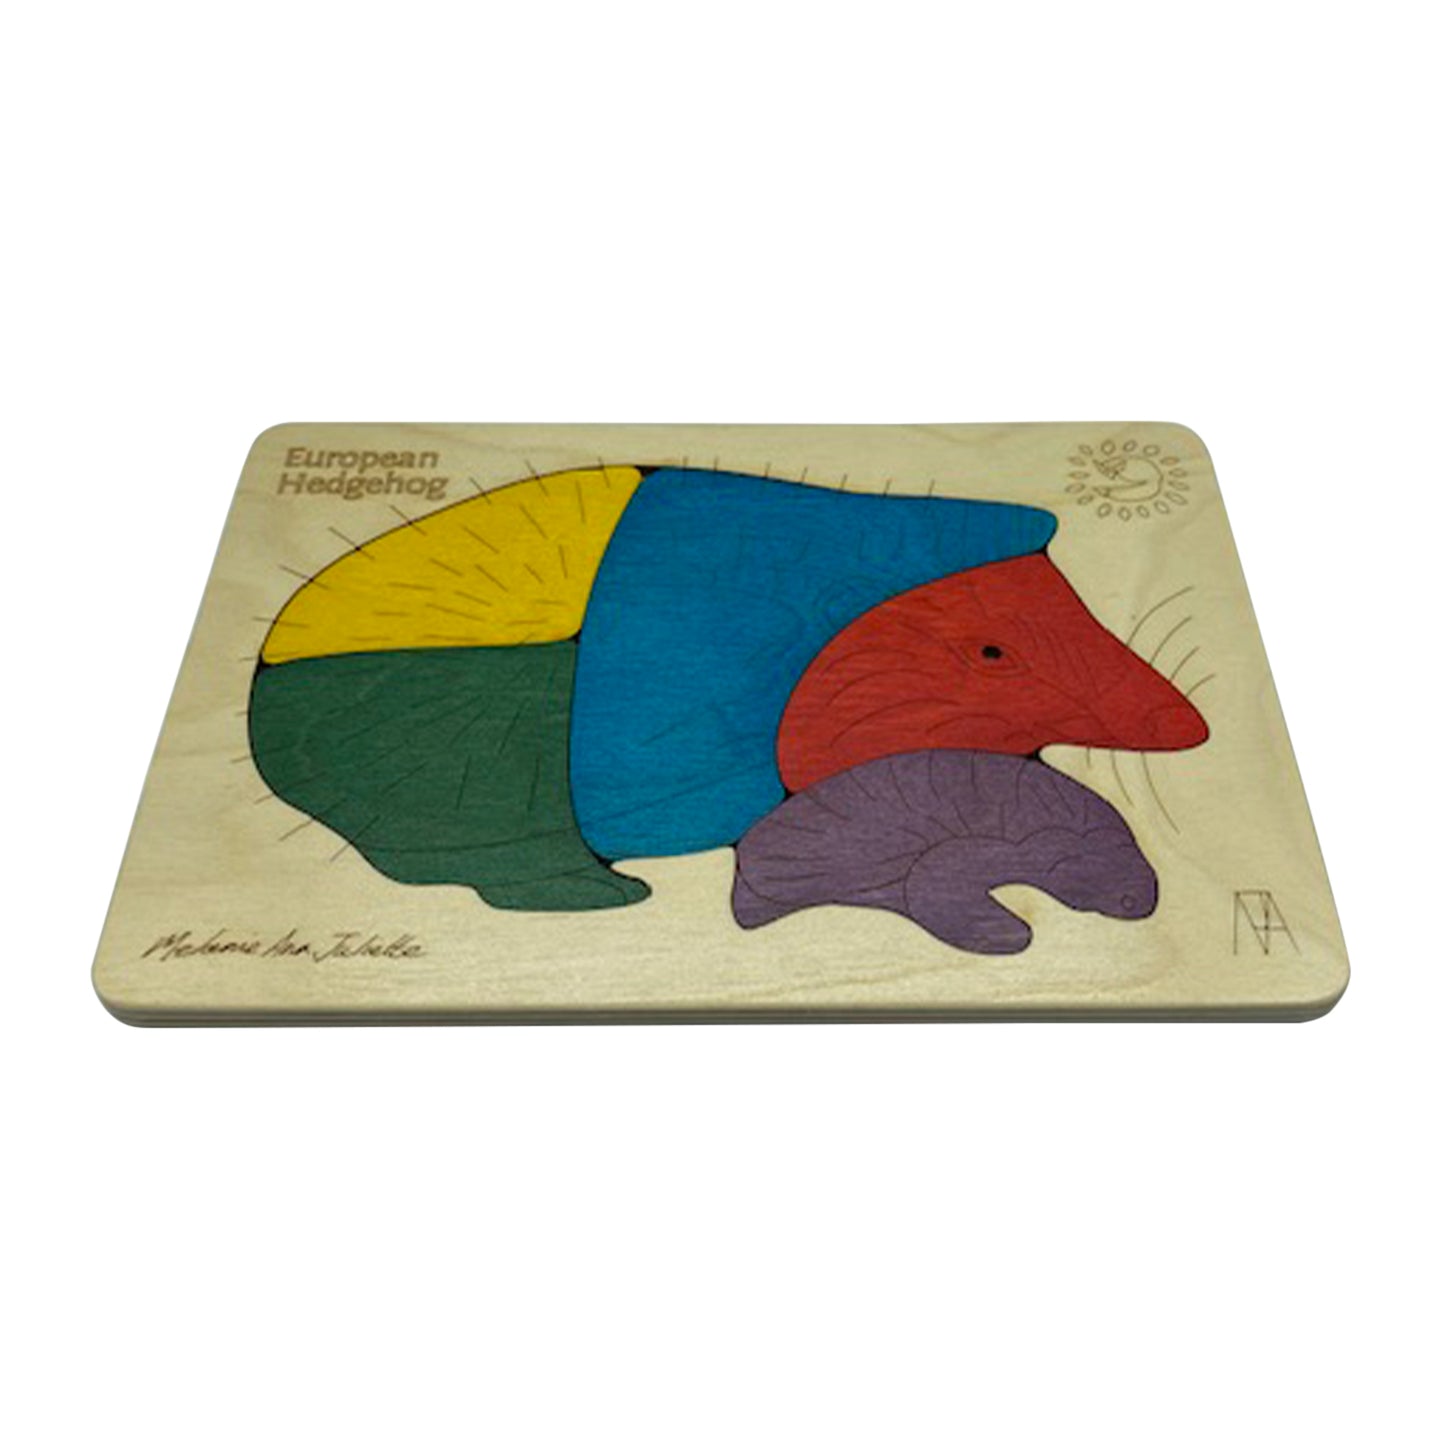 Wooden European Hedgehog Puzzle Board